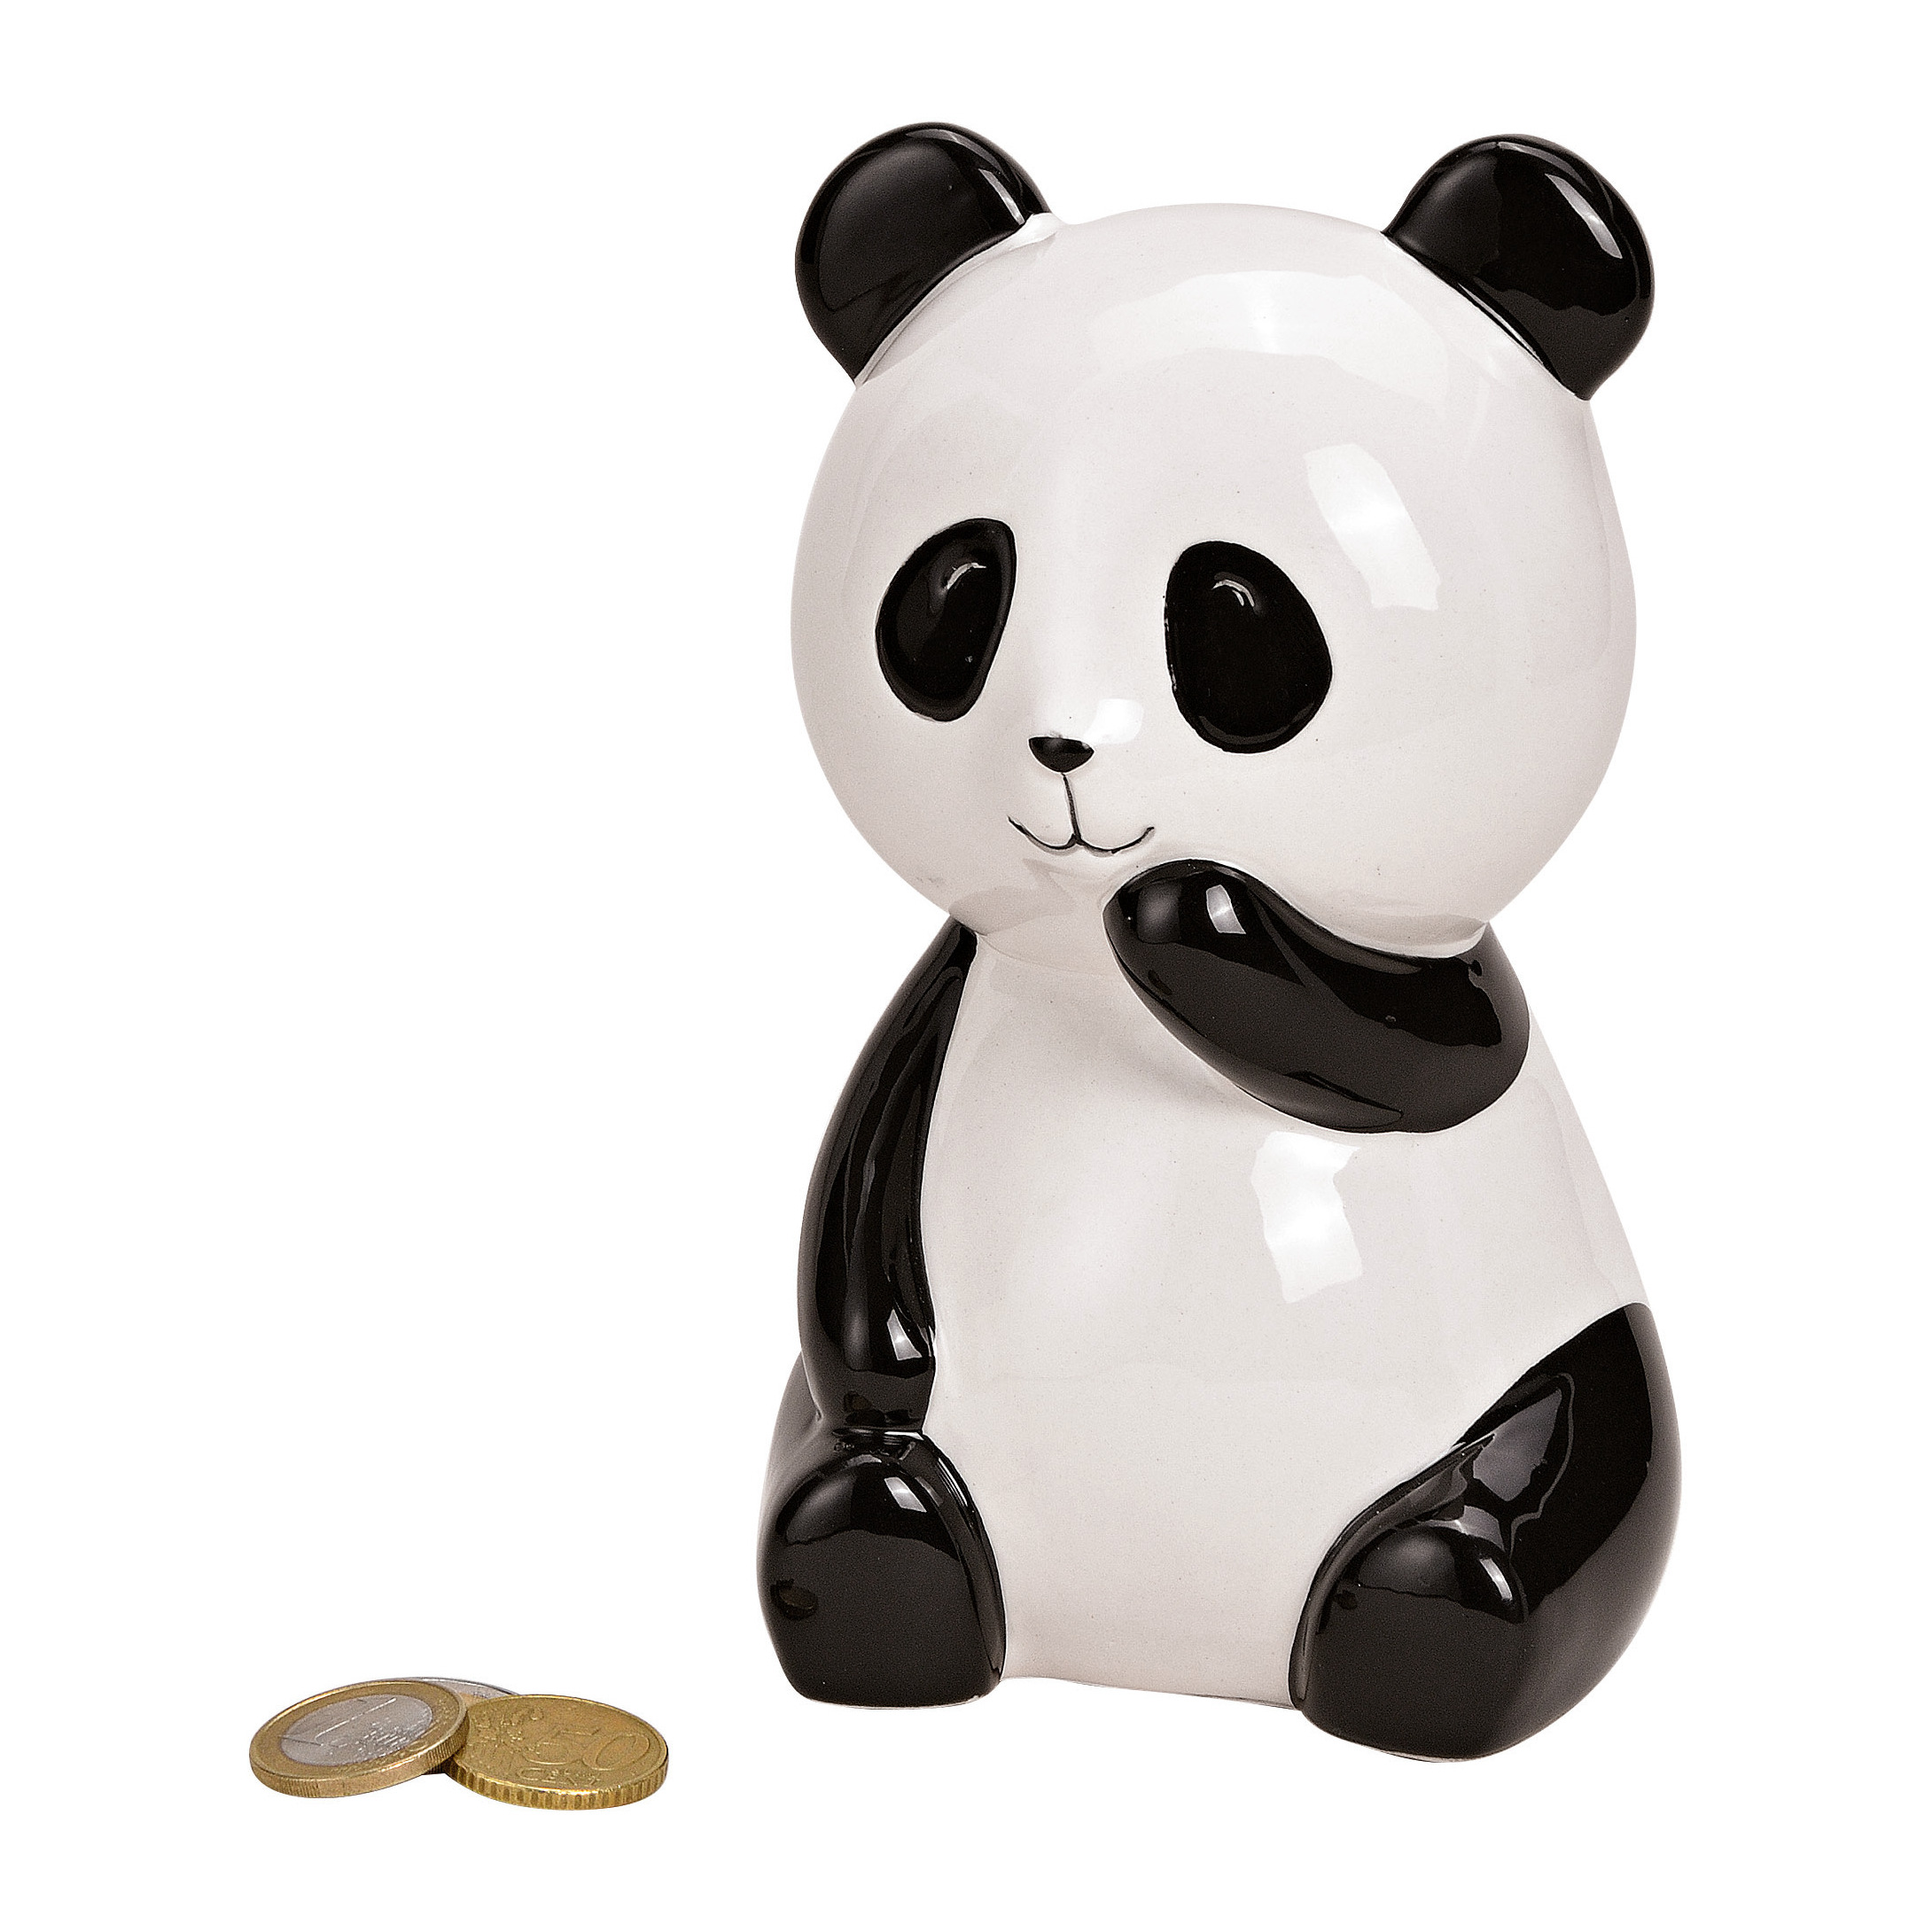 Dieren spaarpot zwarte/witte panda 15 x 10 x 10 cm - Pandas dieren cadeau spaarpotten - Geld sparen - Leren omgaan met geld